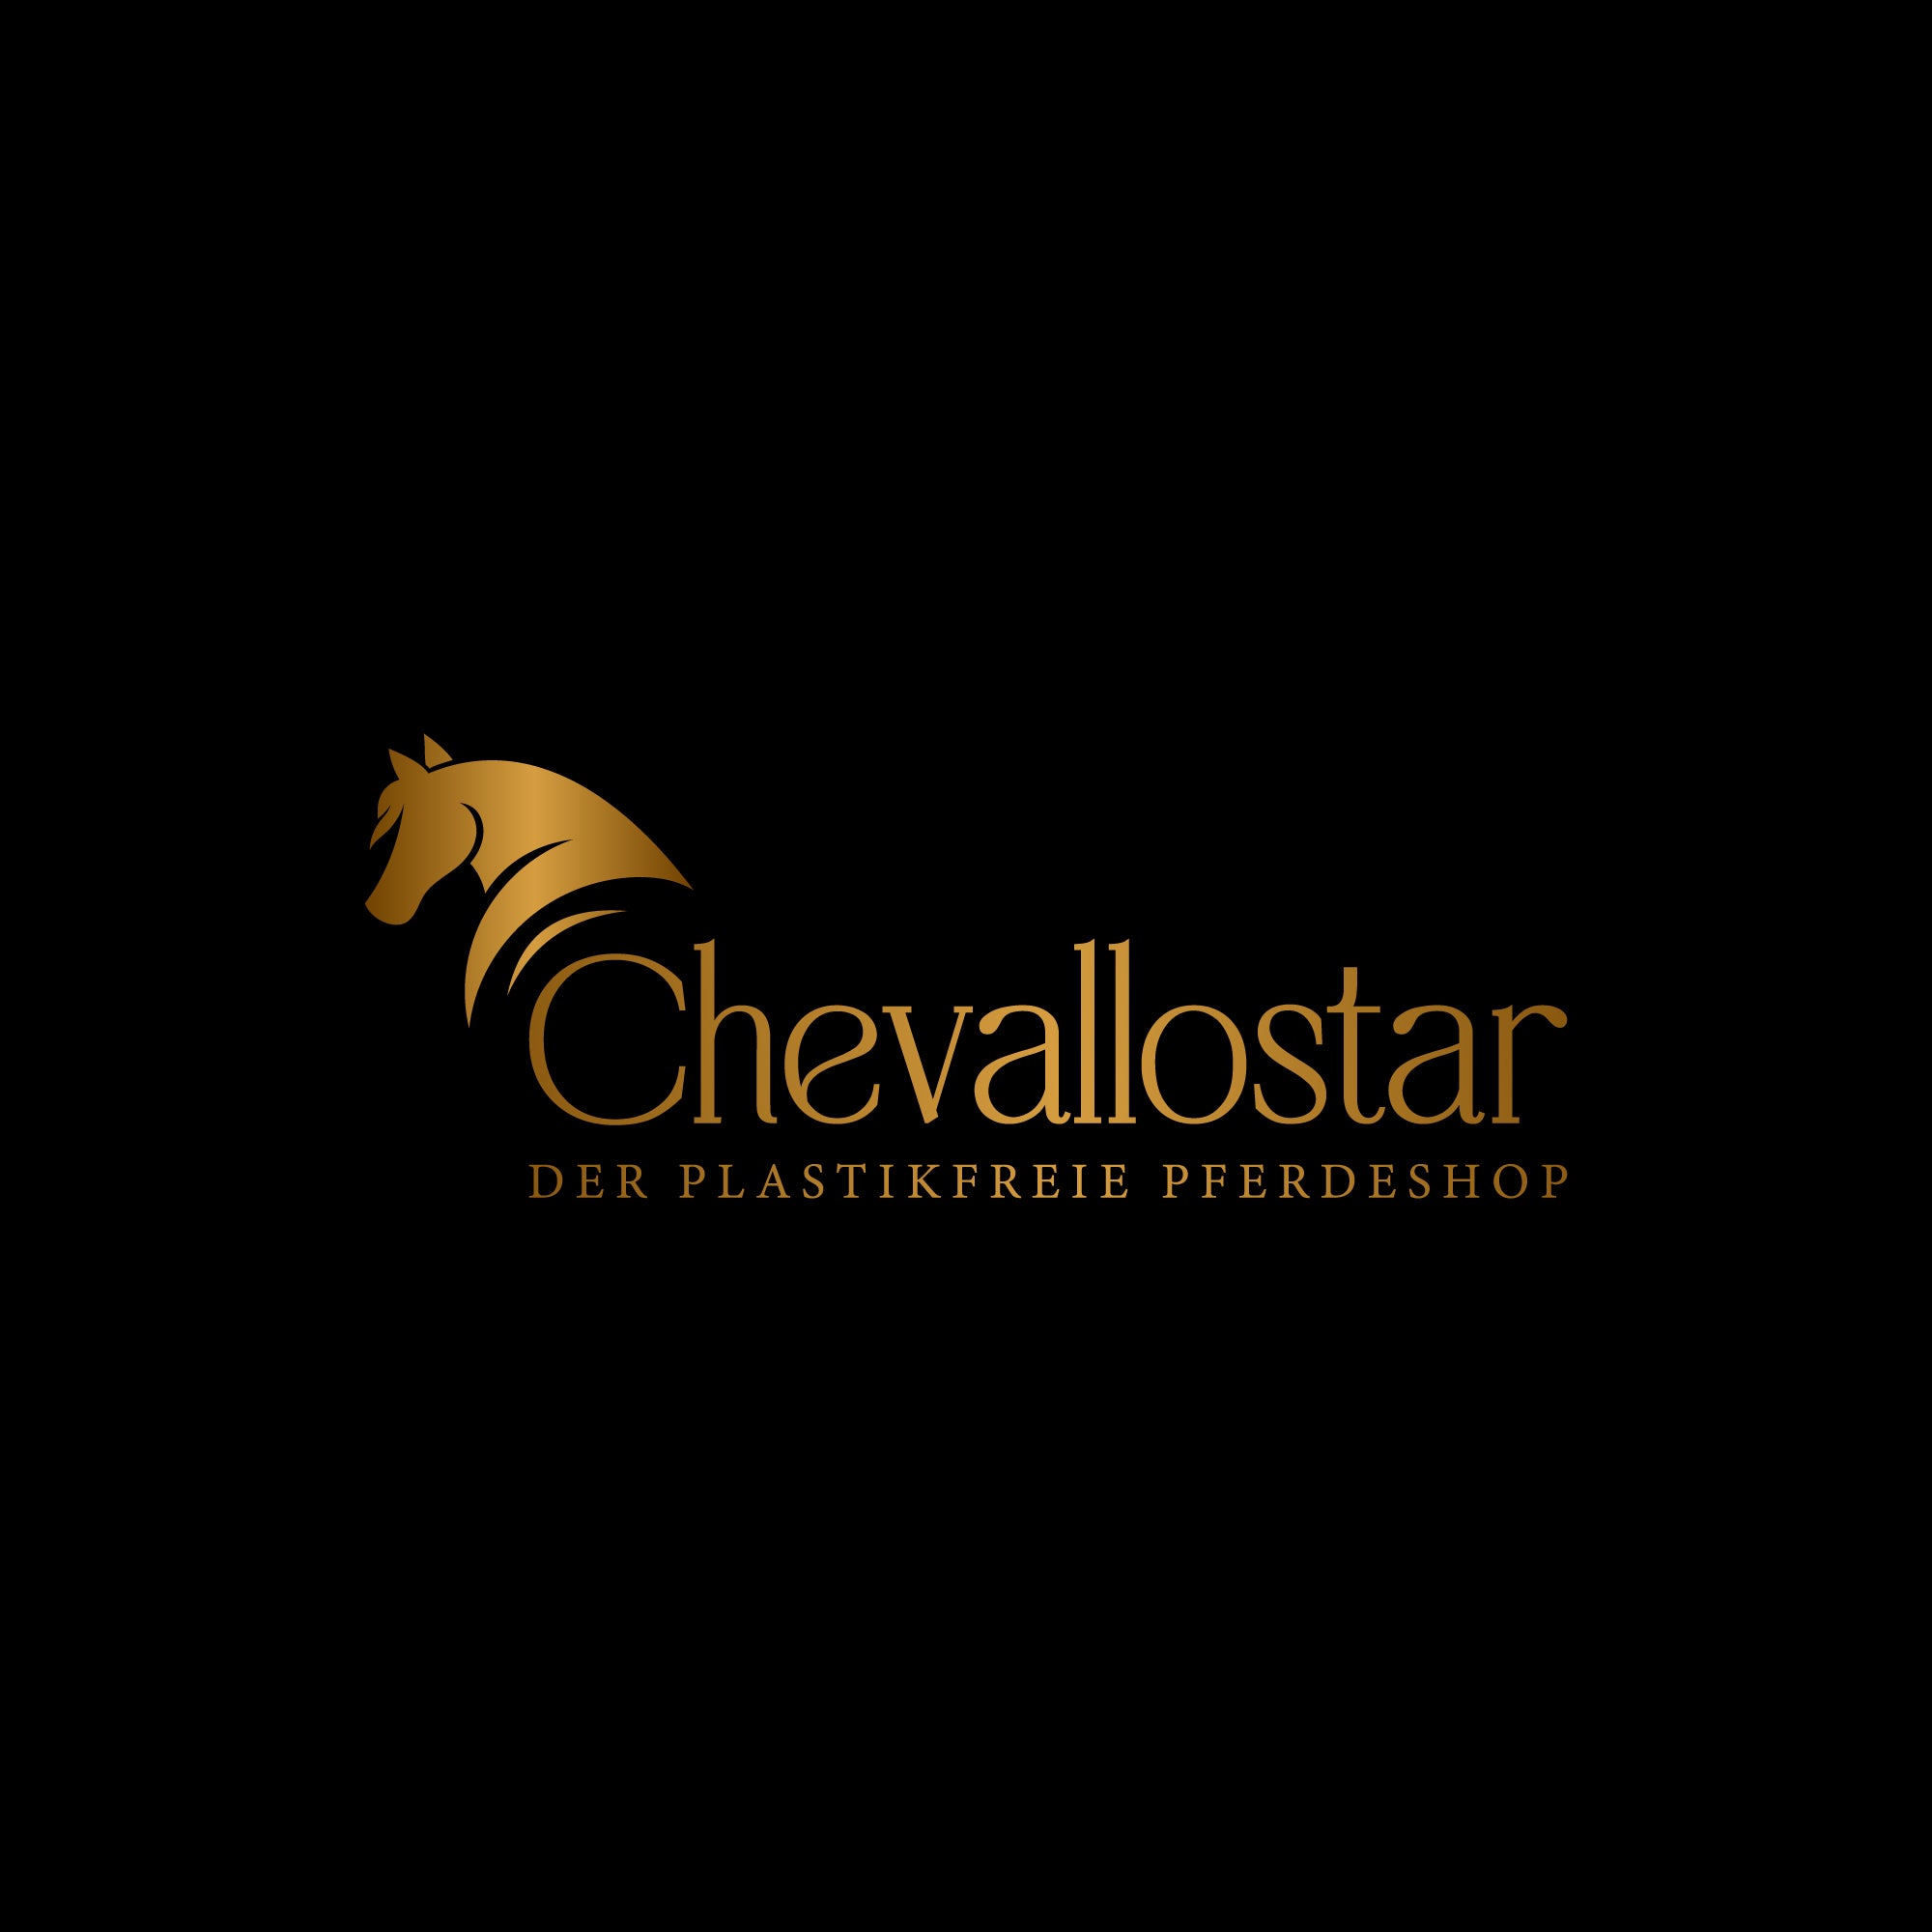 Chevallostar - der plastikfreie und nachhaltige Pferdeshop